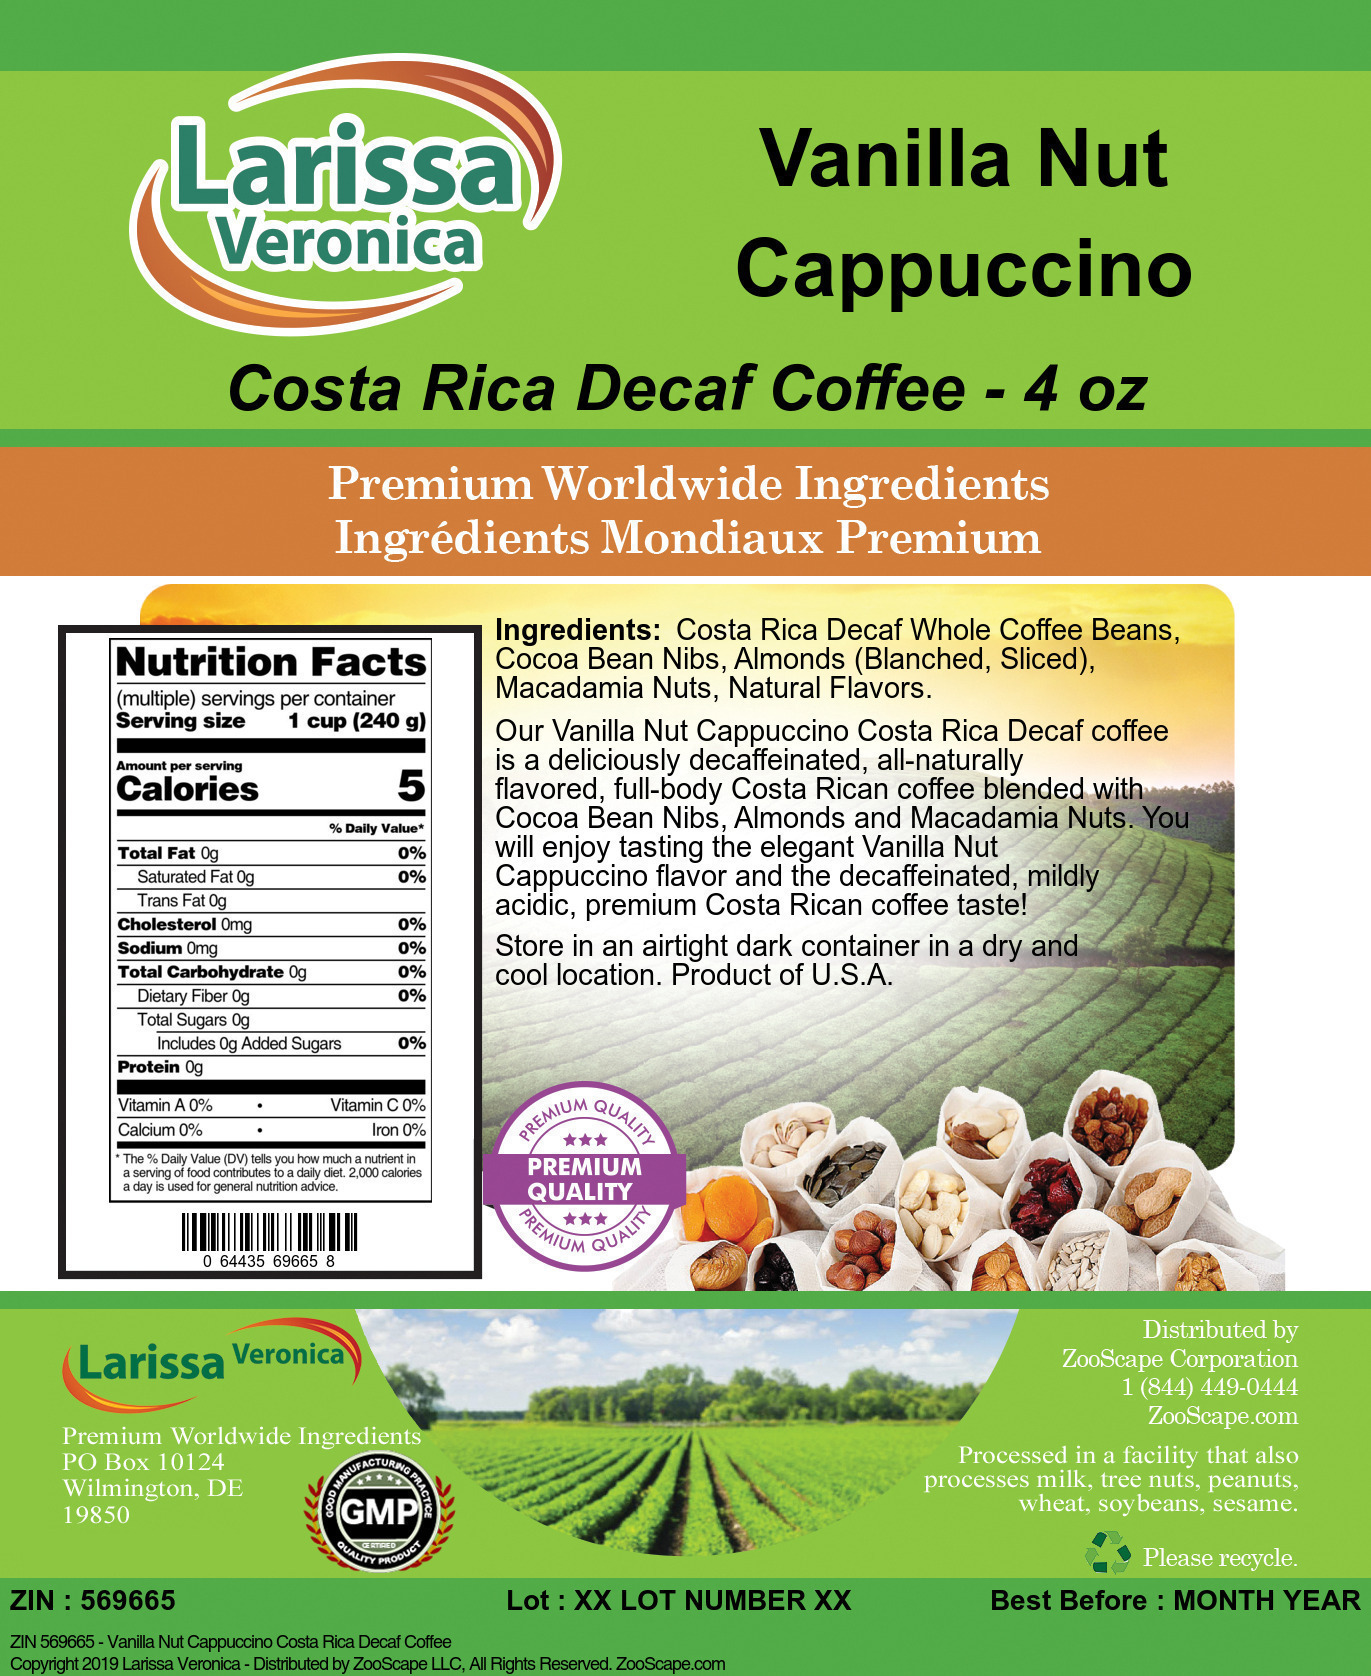 Vanilla Nut Cappuccino Costa Rica Decaf Coffee - Label